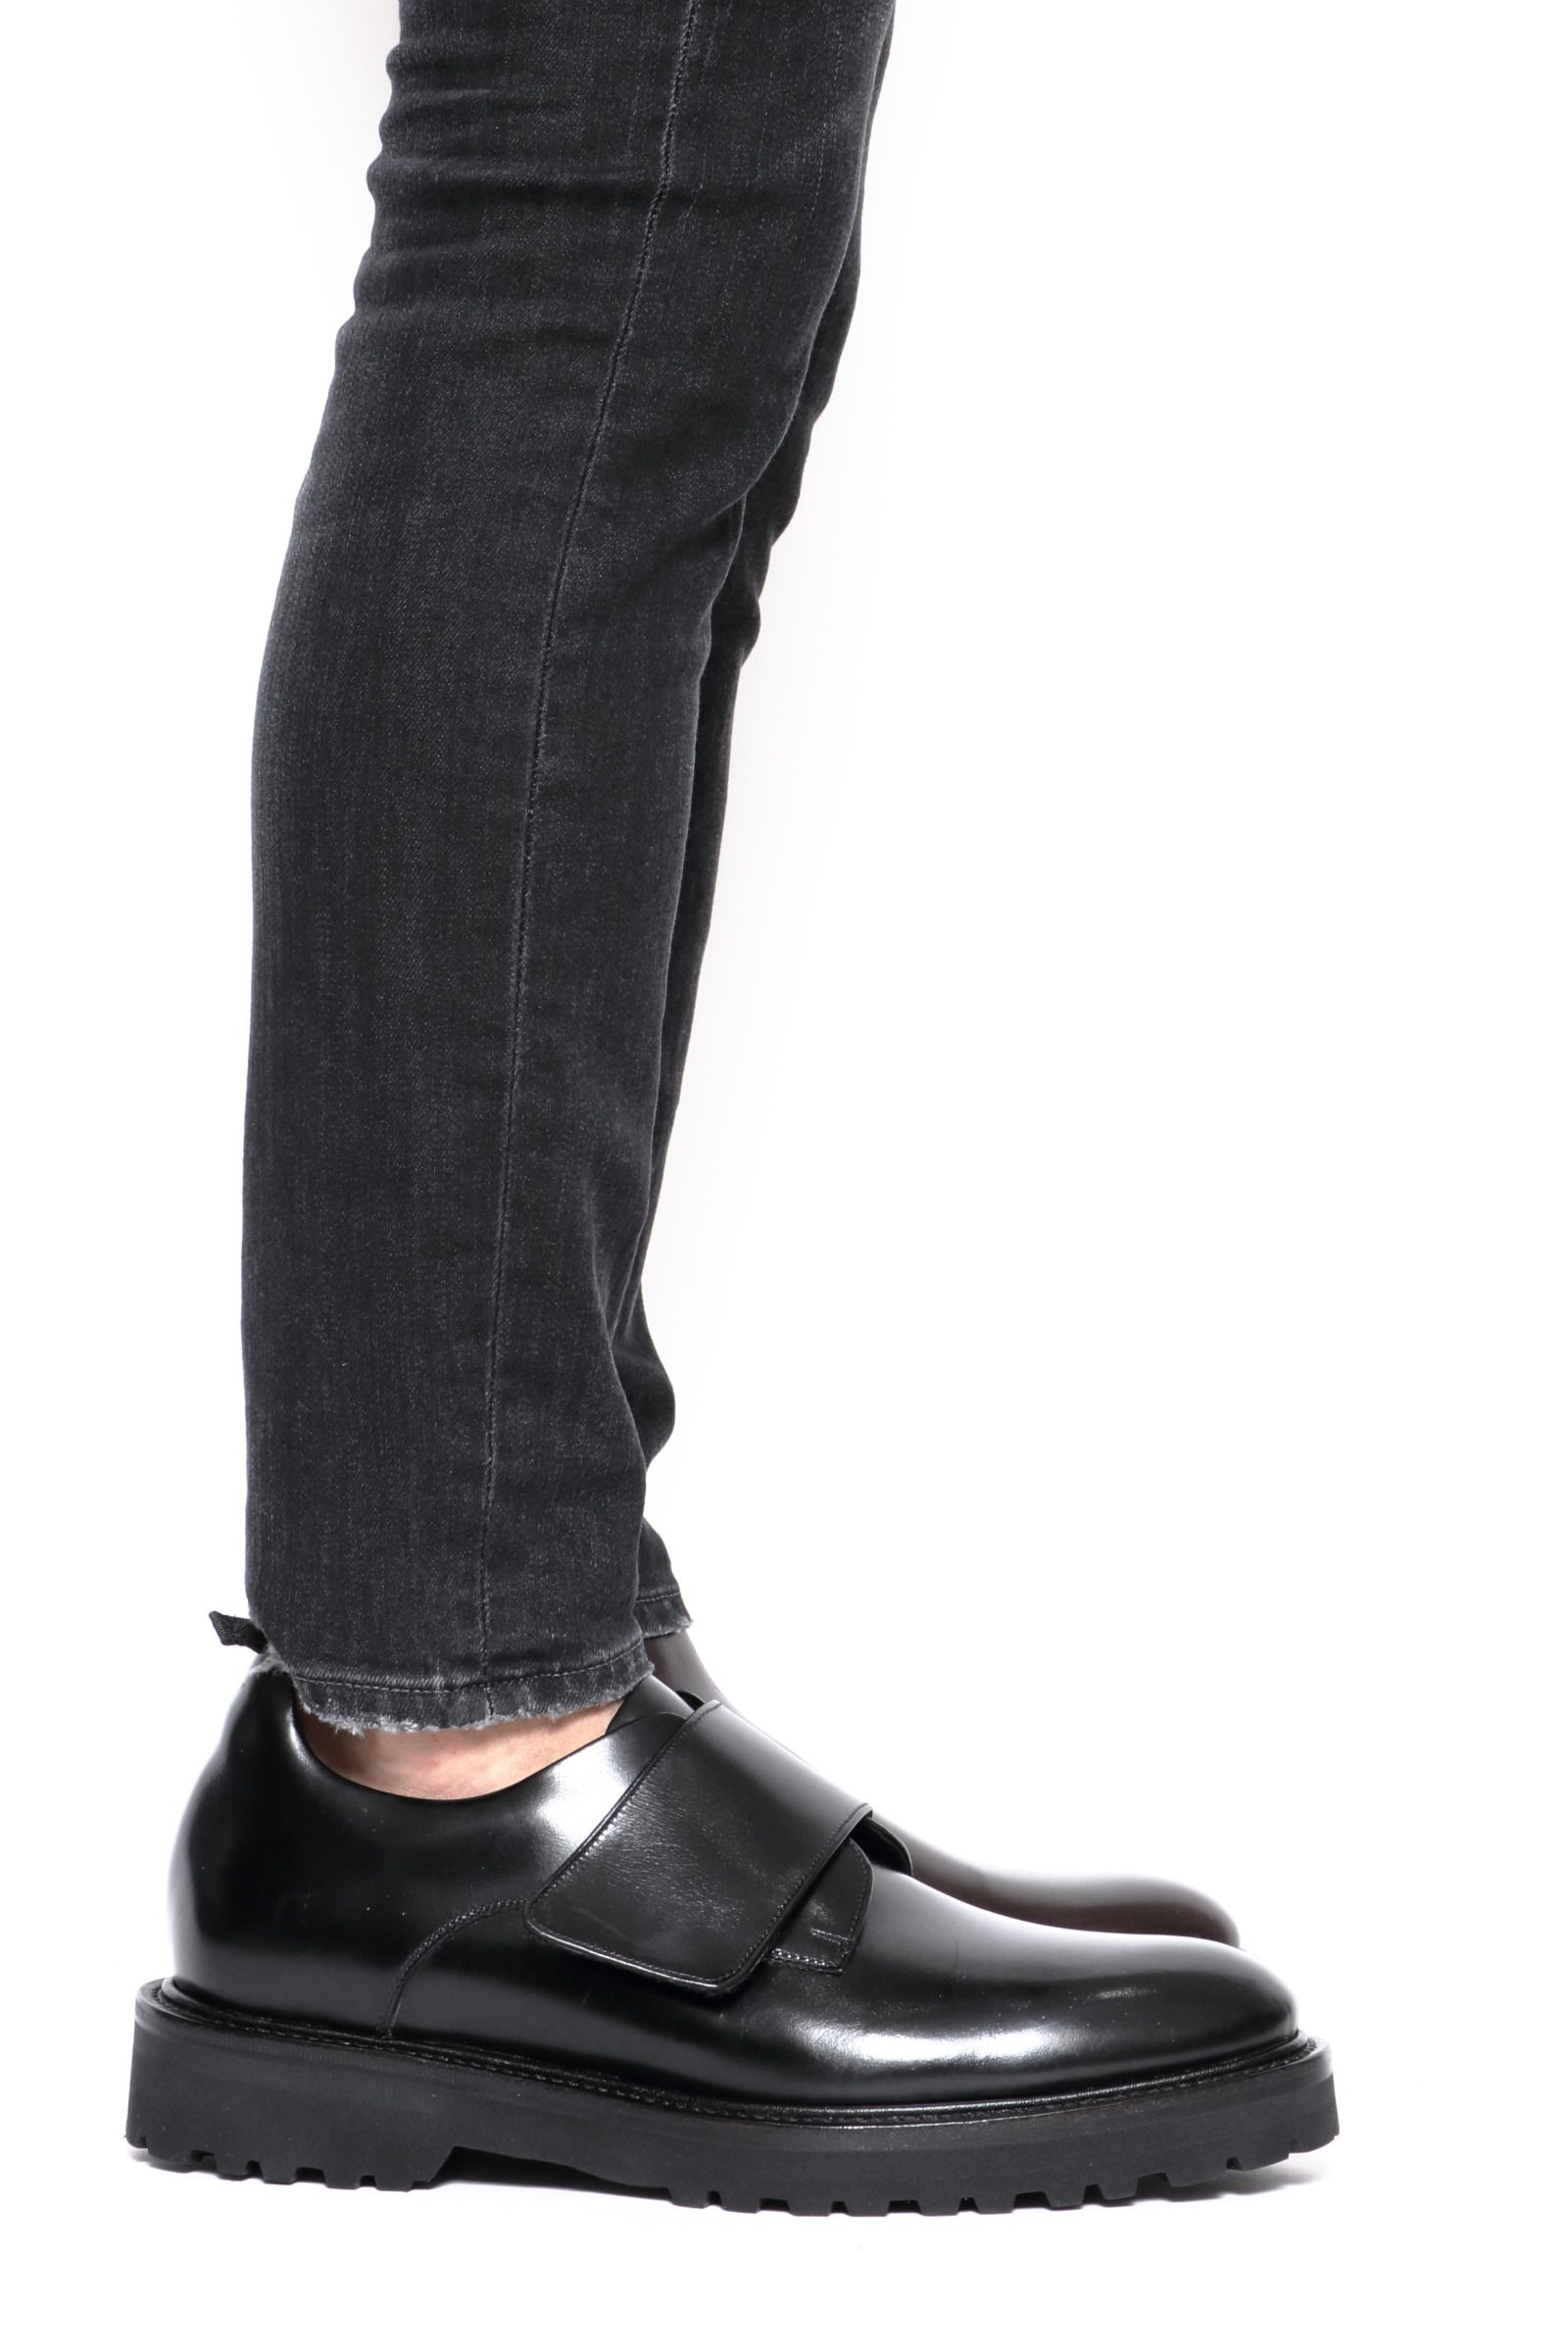 ダブルエイチ／WH チャッカブーツ シューズ 靴 メンズ 男性 男性用スエード スウェード レザー 革 本革 ブラウン 茶 WH-0710  BIRDIEラスト プレーントゥ Vibramソールメンズ - ブーツ